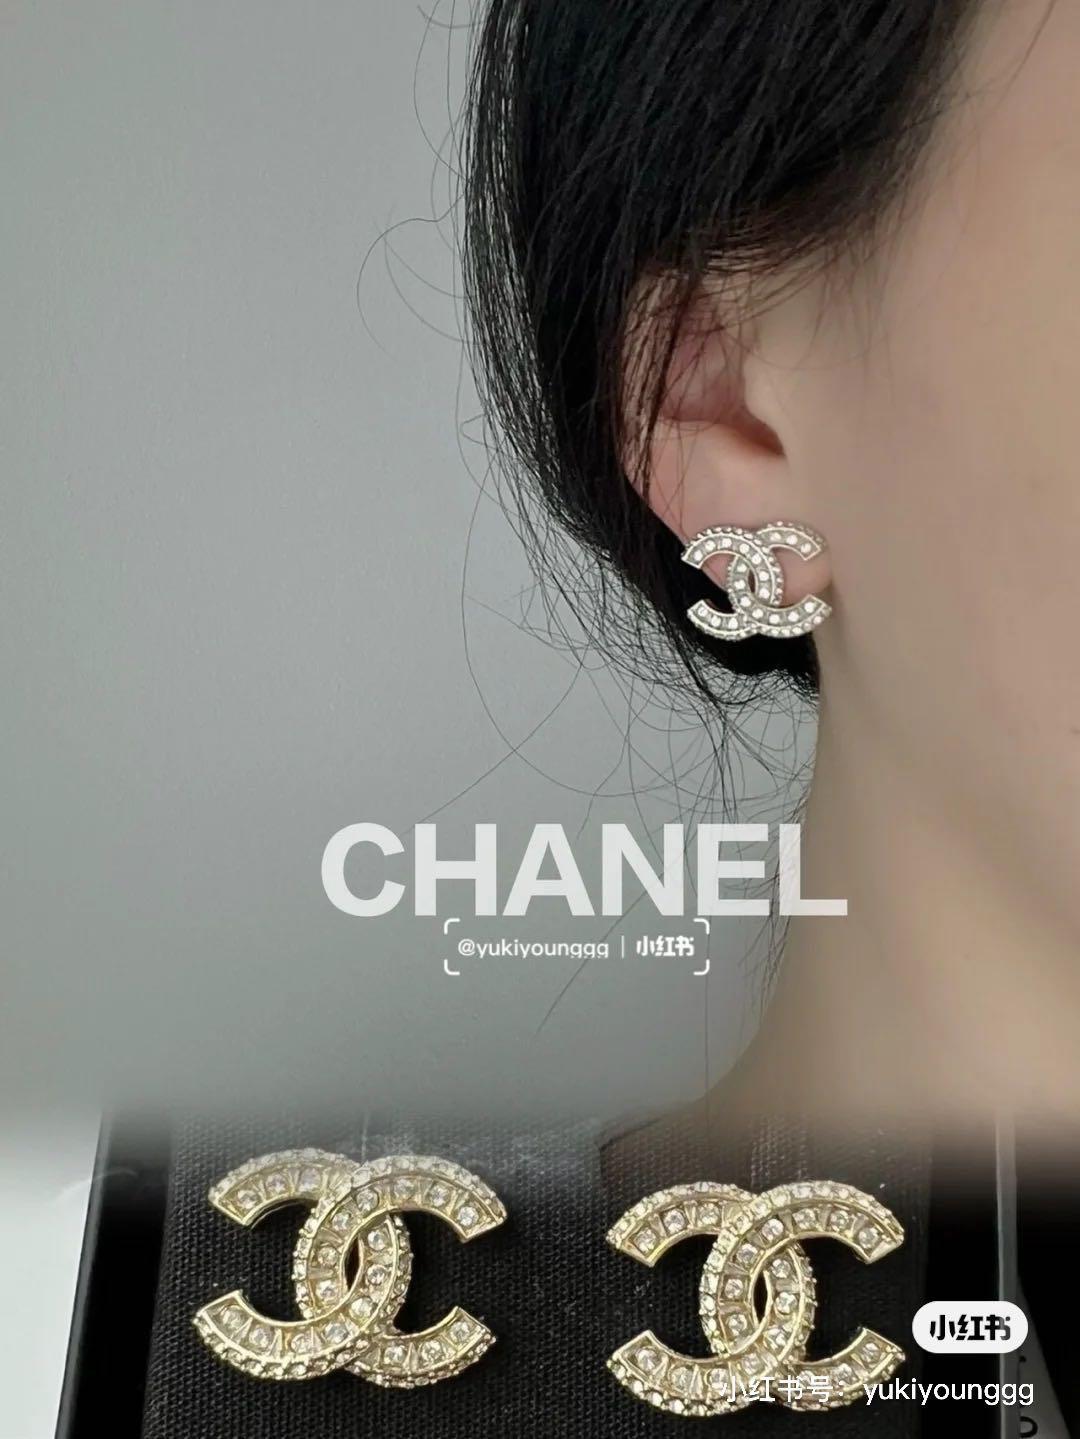 Chanel Ear Studs Dainty Chanel Earrings Solid Sterling Silver 18k